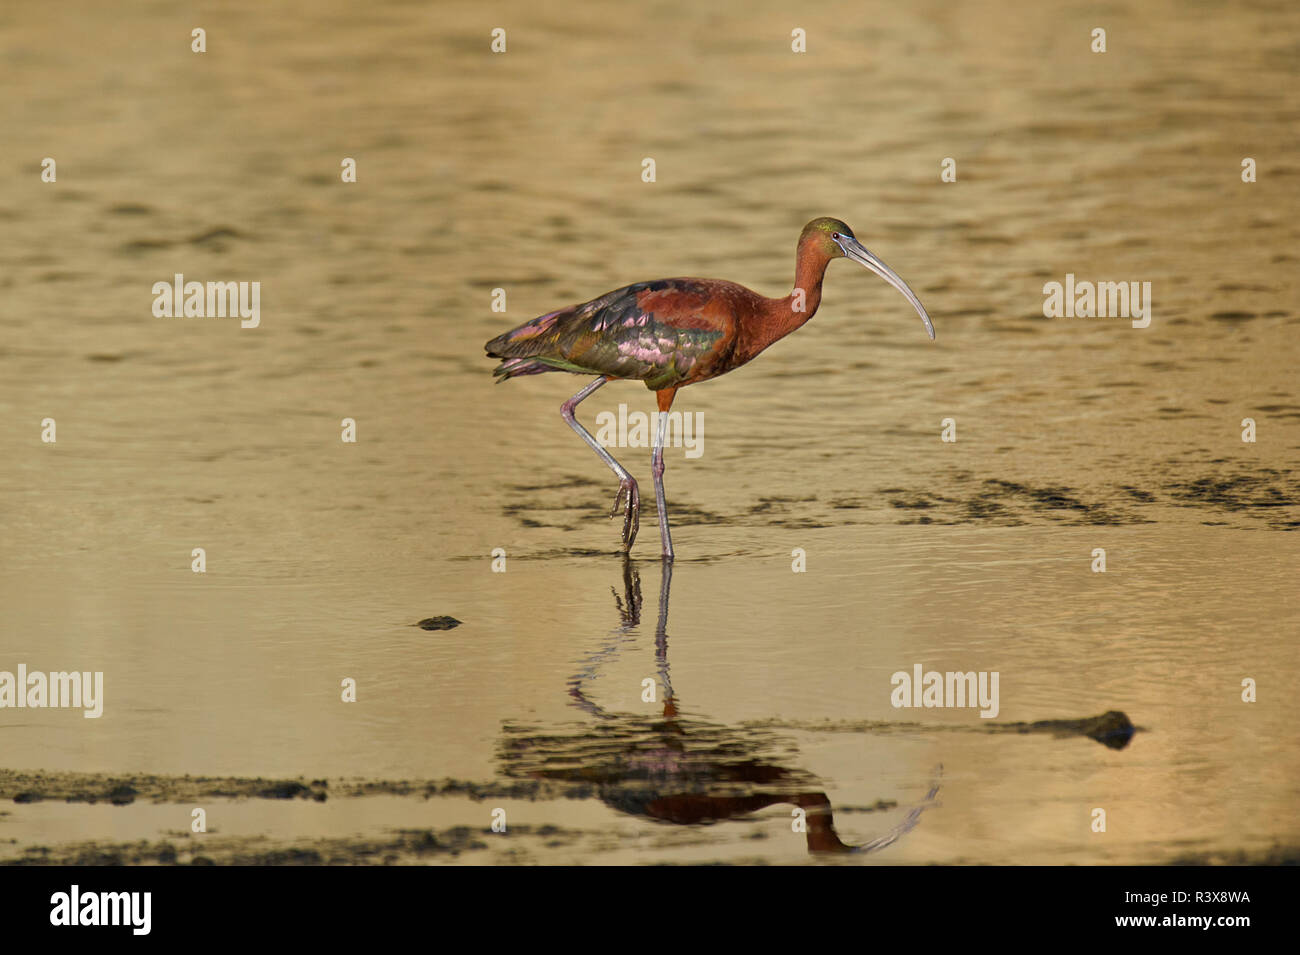 USA, Kalifornien, Los Angeles. Glossy ibis in der Zucht Gefieder. Credit: Dave Welling/Jaynes Galerie/DanitaDelimont. com Stockfoto